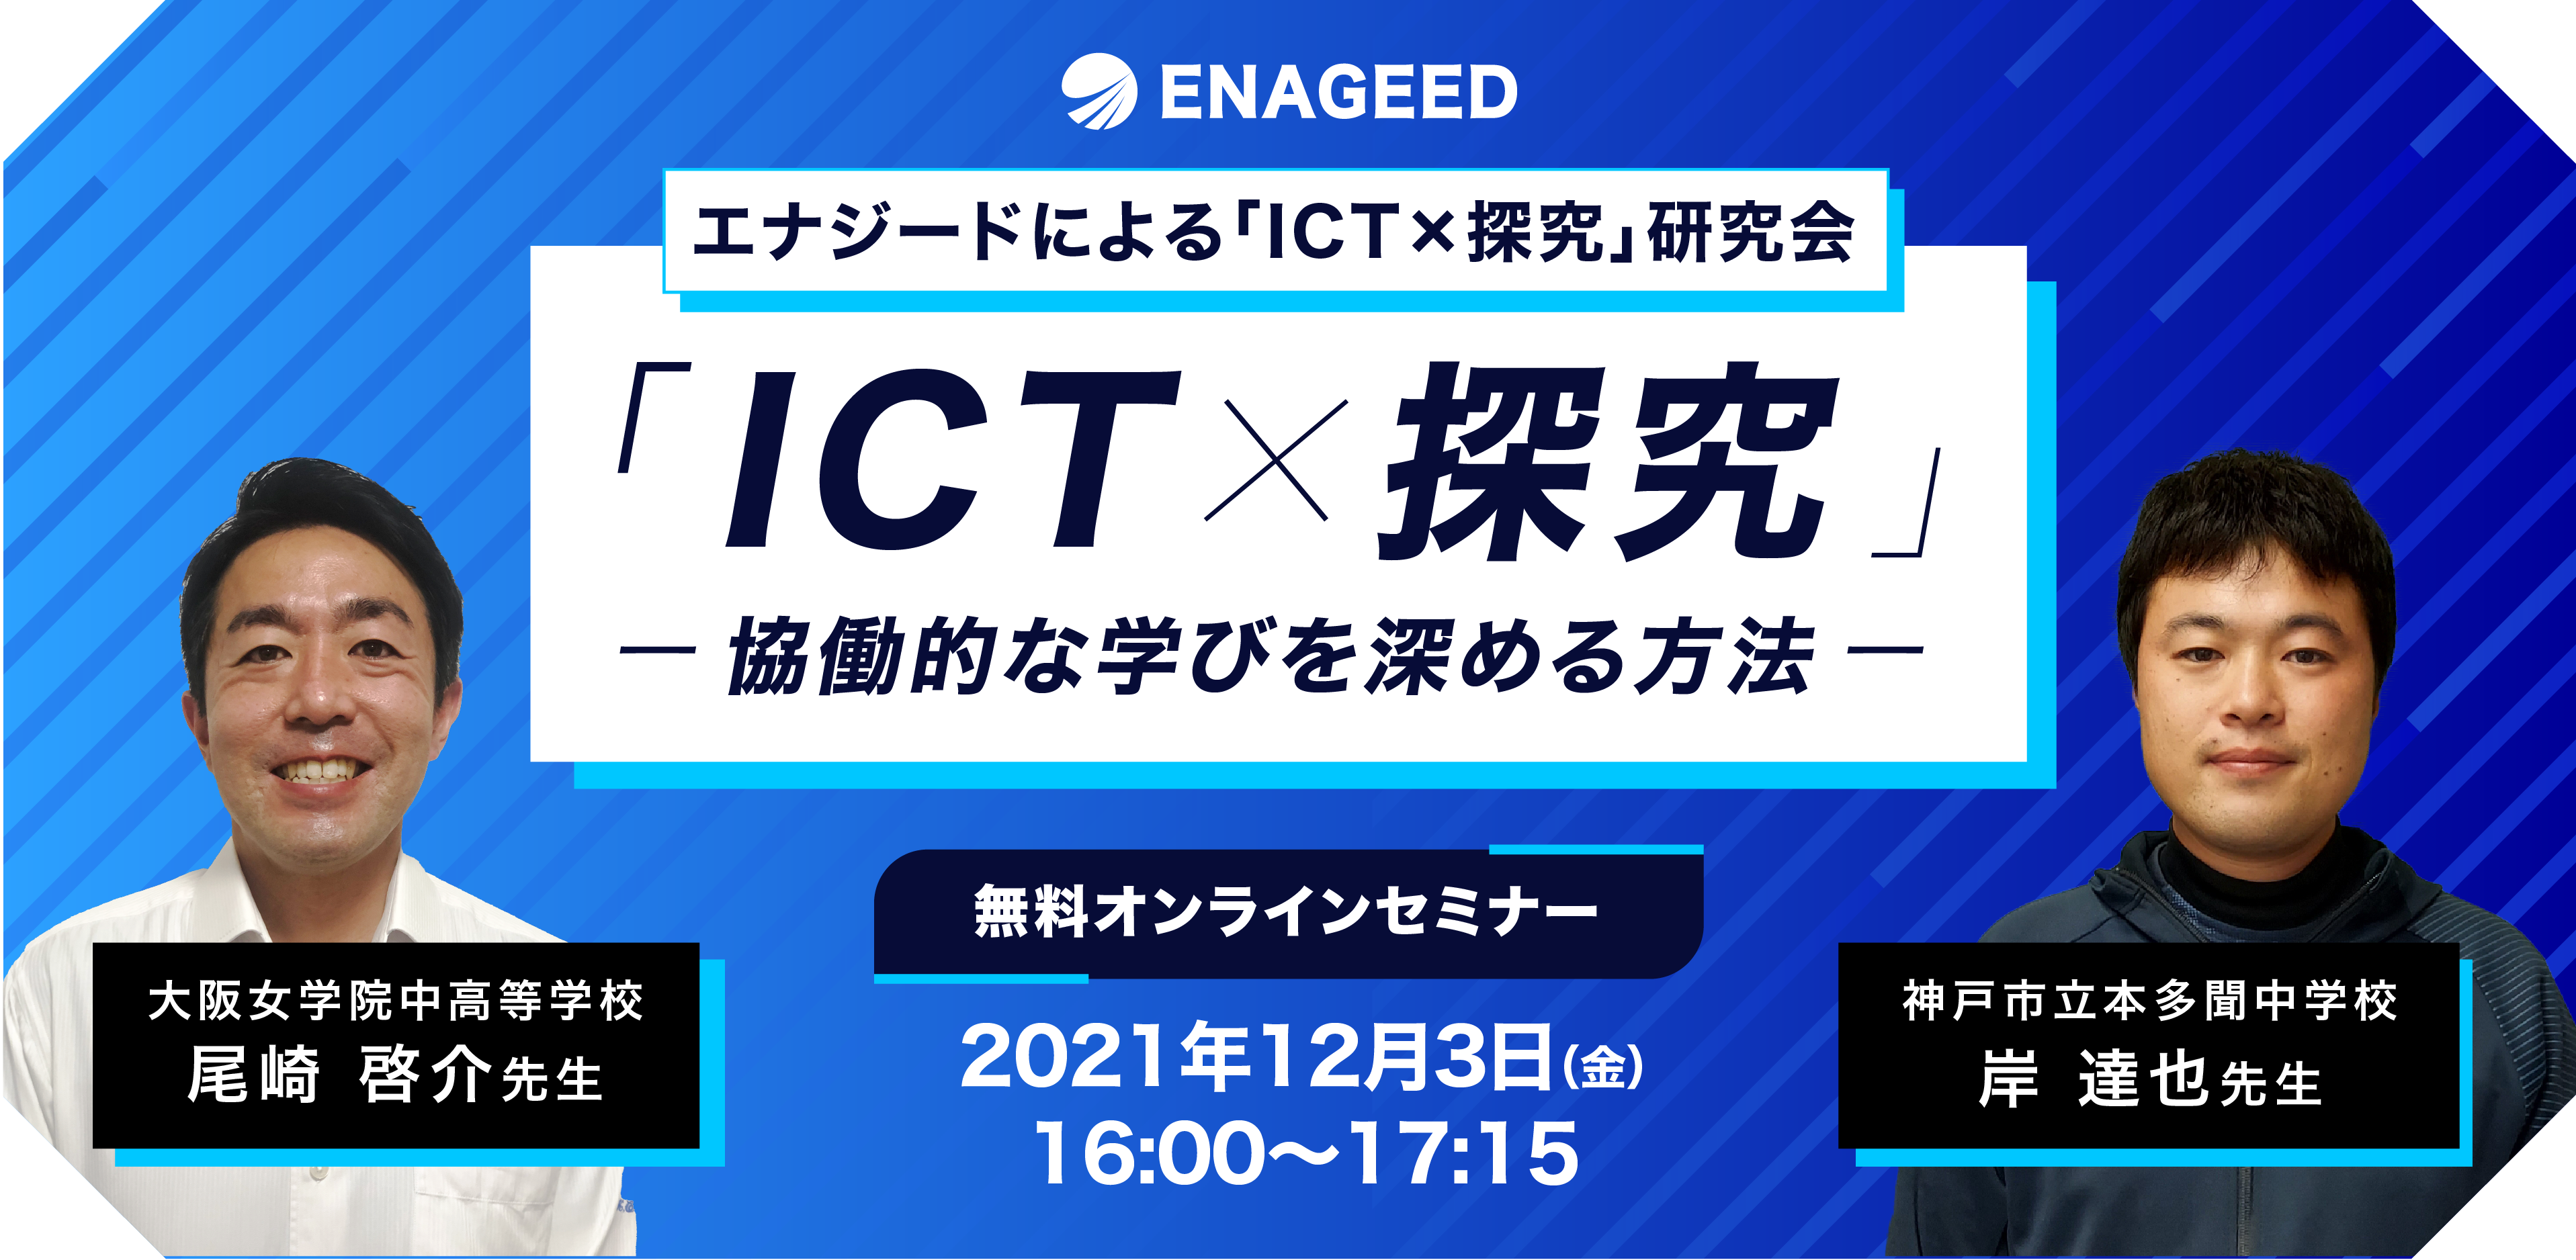 ICT探究_アートボード 1 のコピー 5